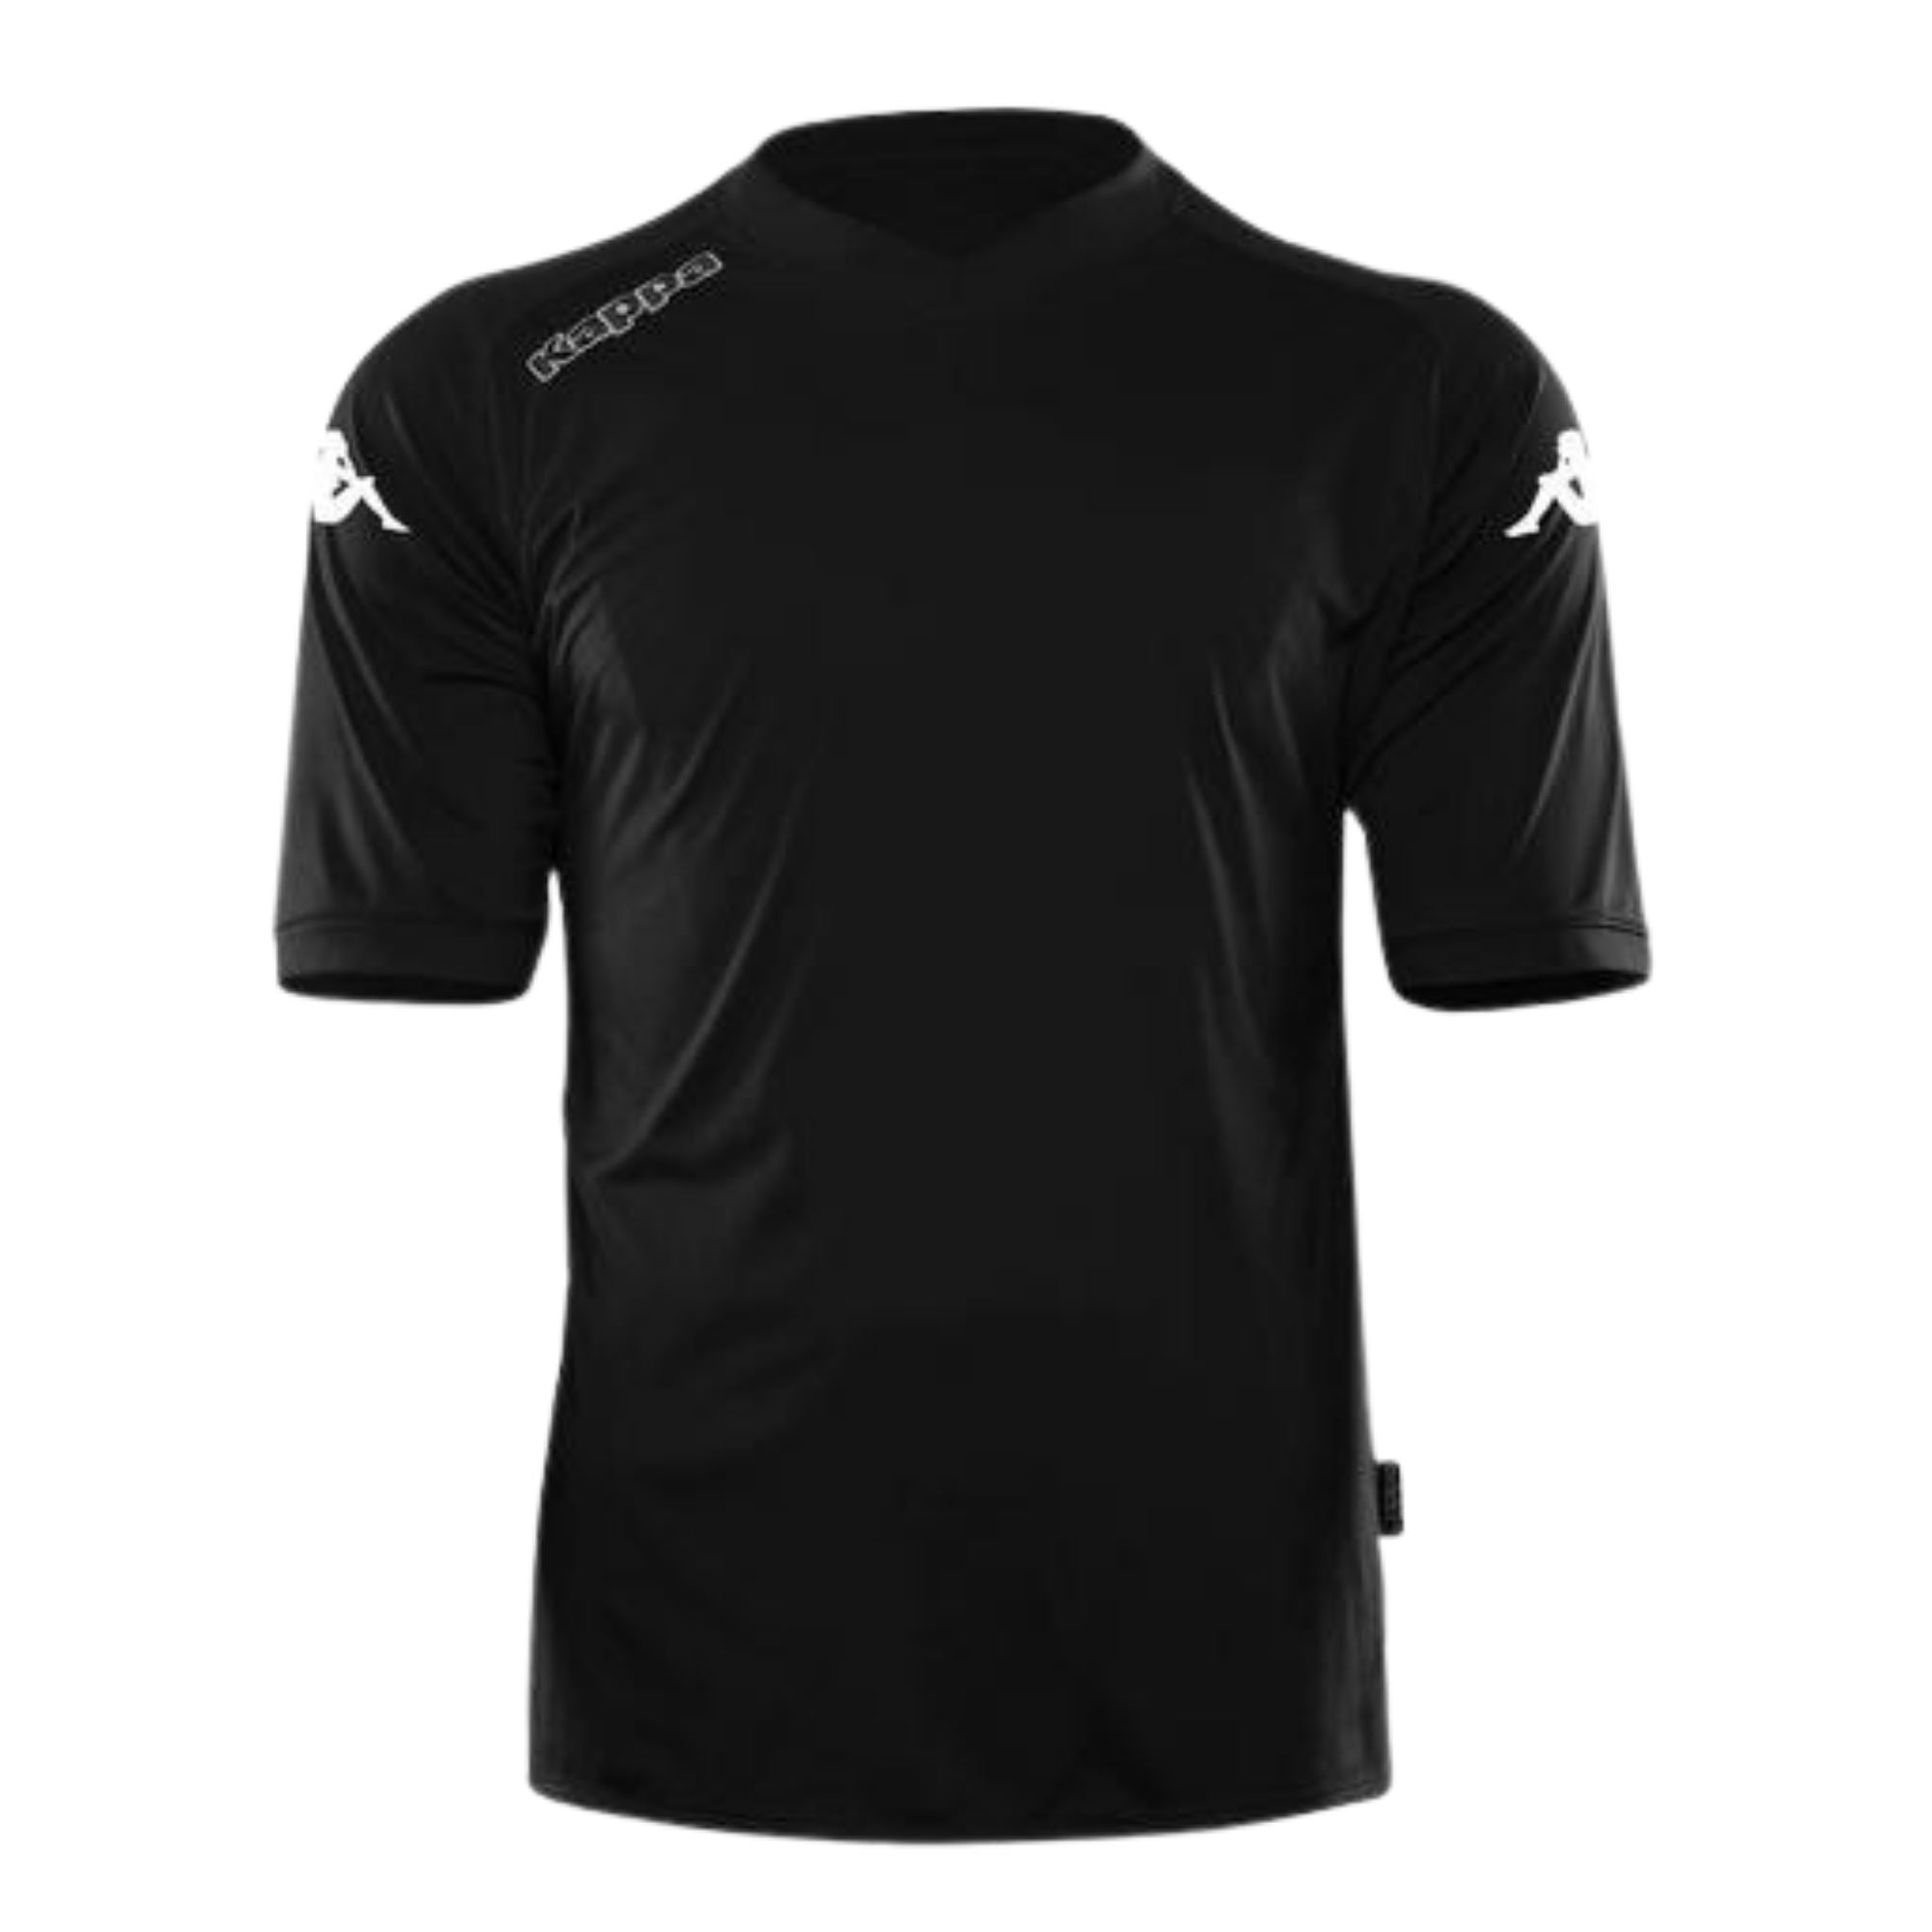 Camiseta negra junior Real Valladolid especial black edition, Kappa